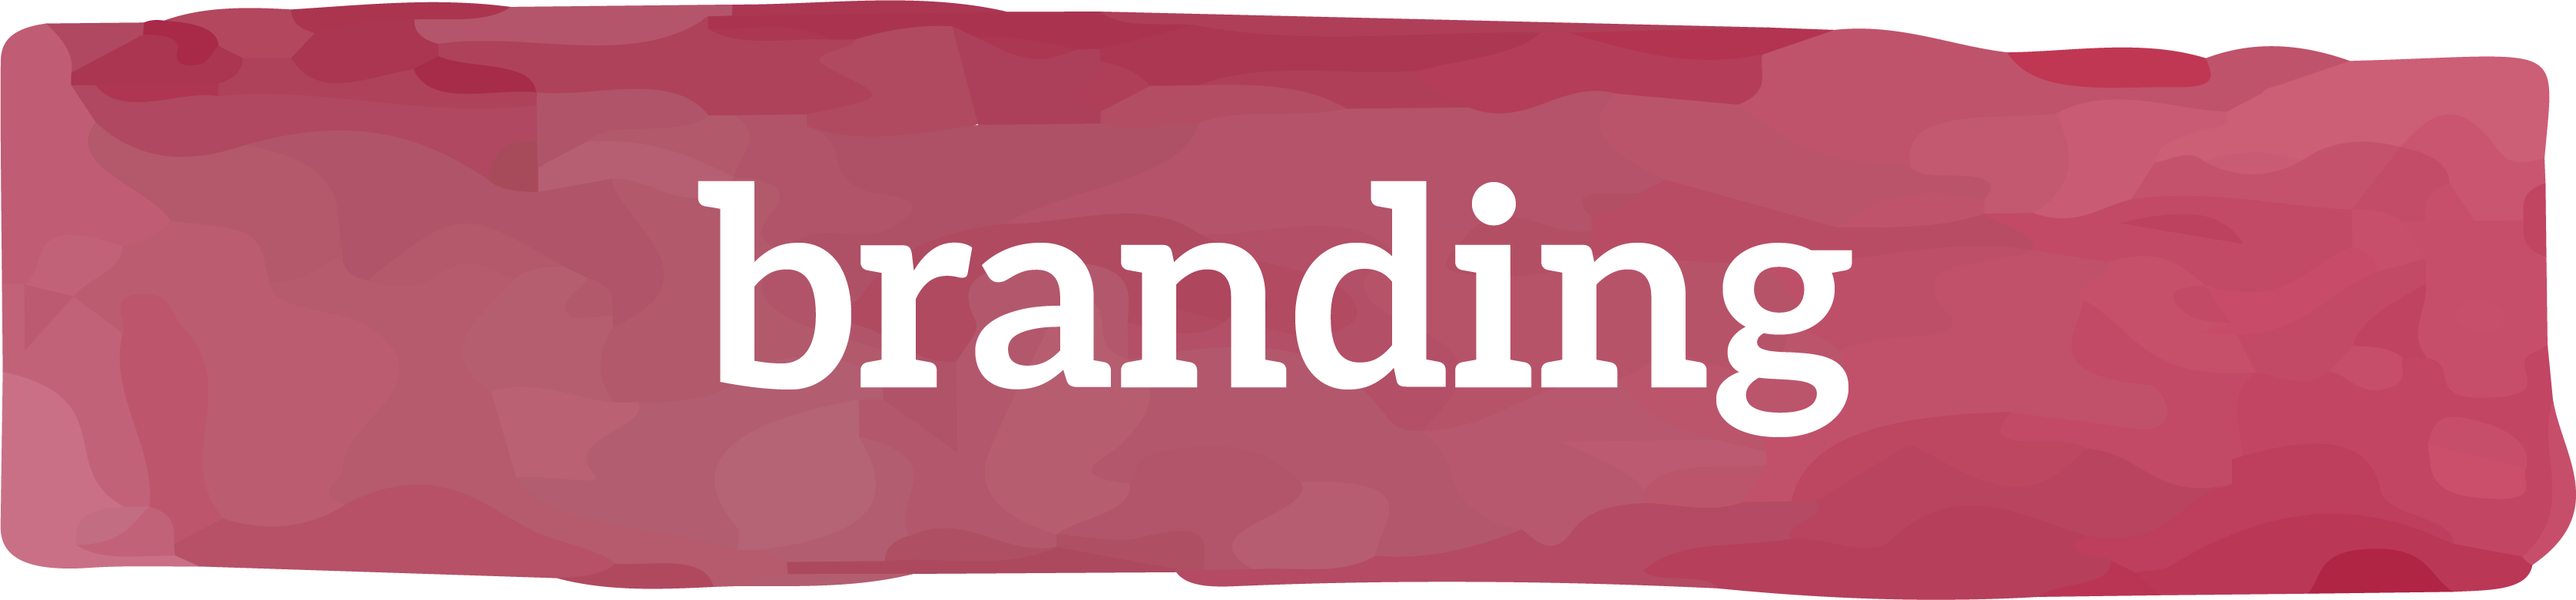 branding-header